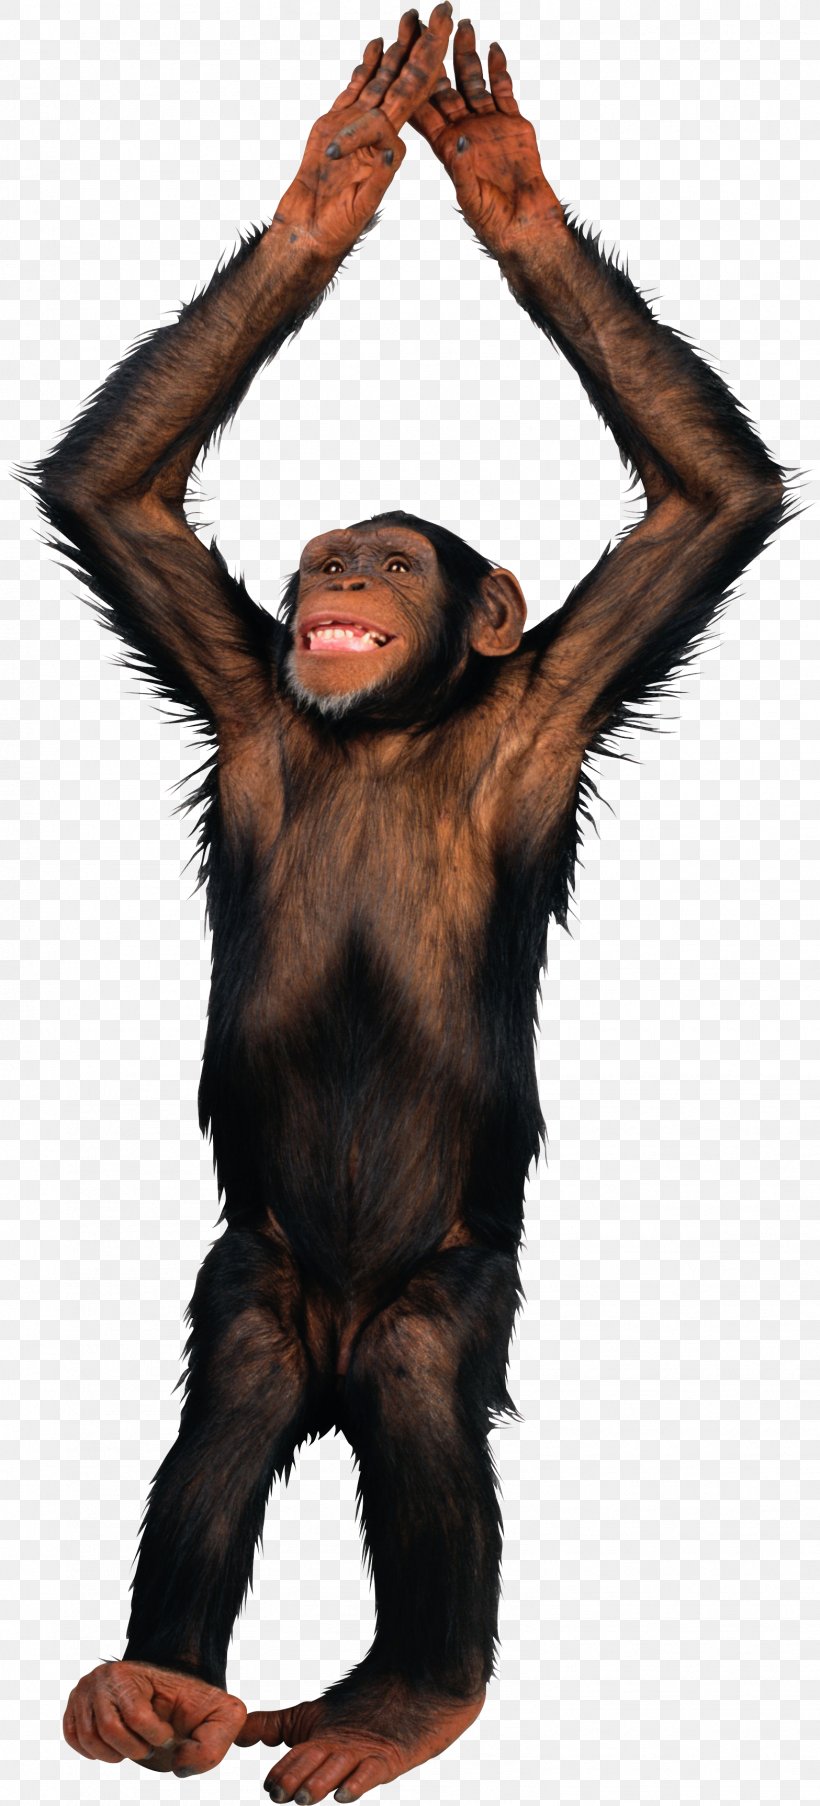 PicMonkey, PNG, 1567x3453px, Primate, Chimpanzee, Common Chimpanzee, Fur, Great Ape Download Free